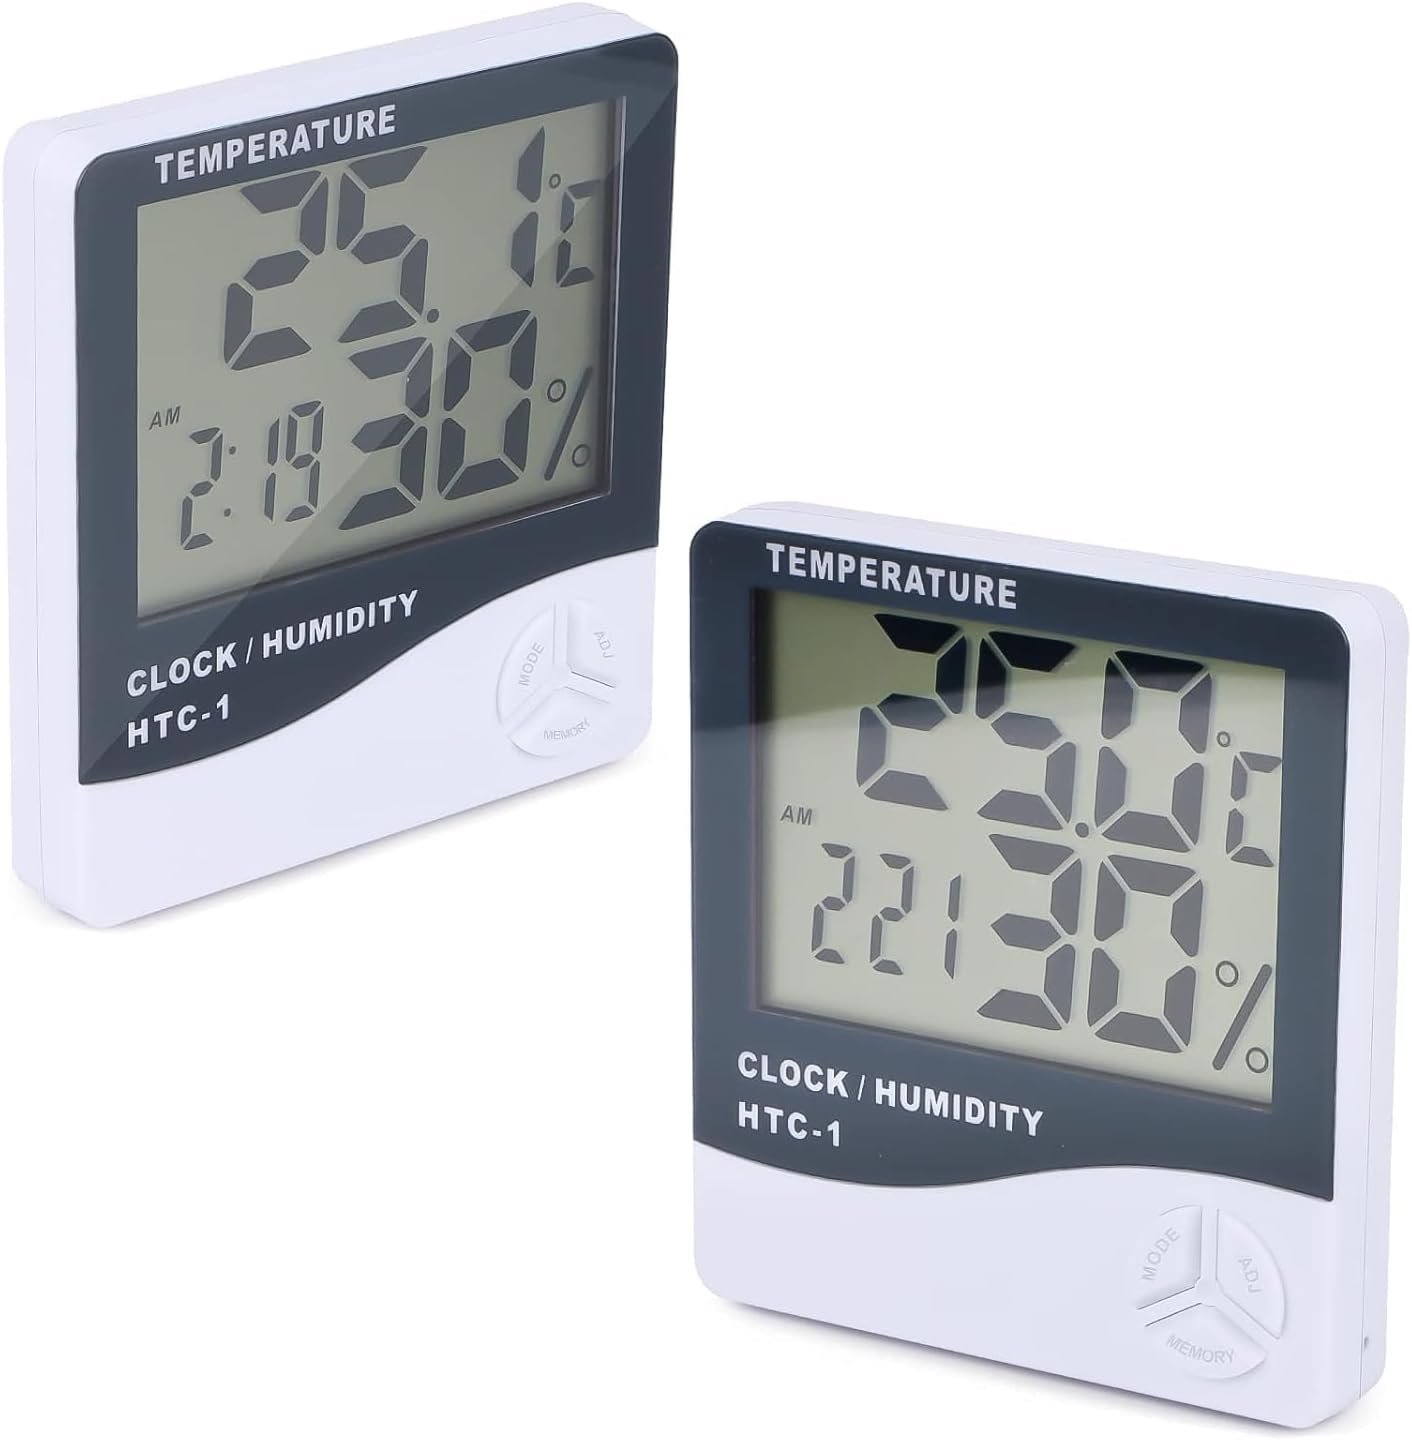 Igrometro Termometro per Interni,Mini LCD Digitale Thermometer per Casa  Monitor di Temperatura e Umidità per Ambienti